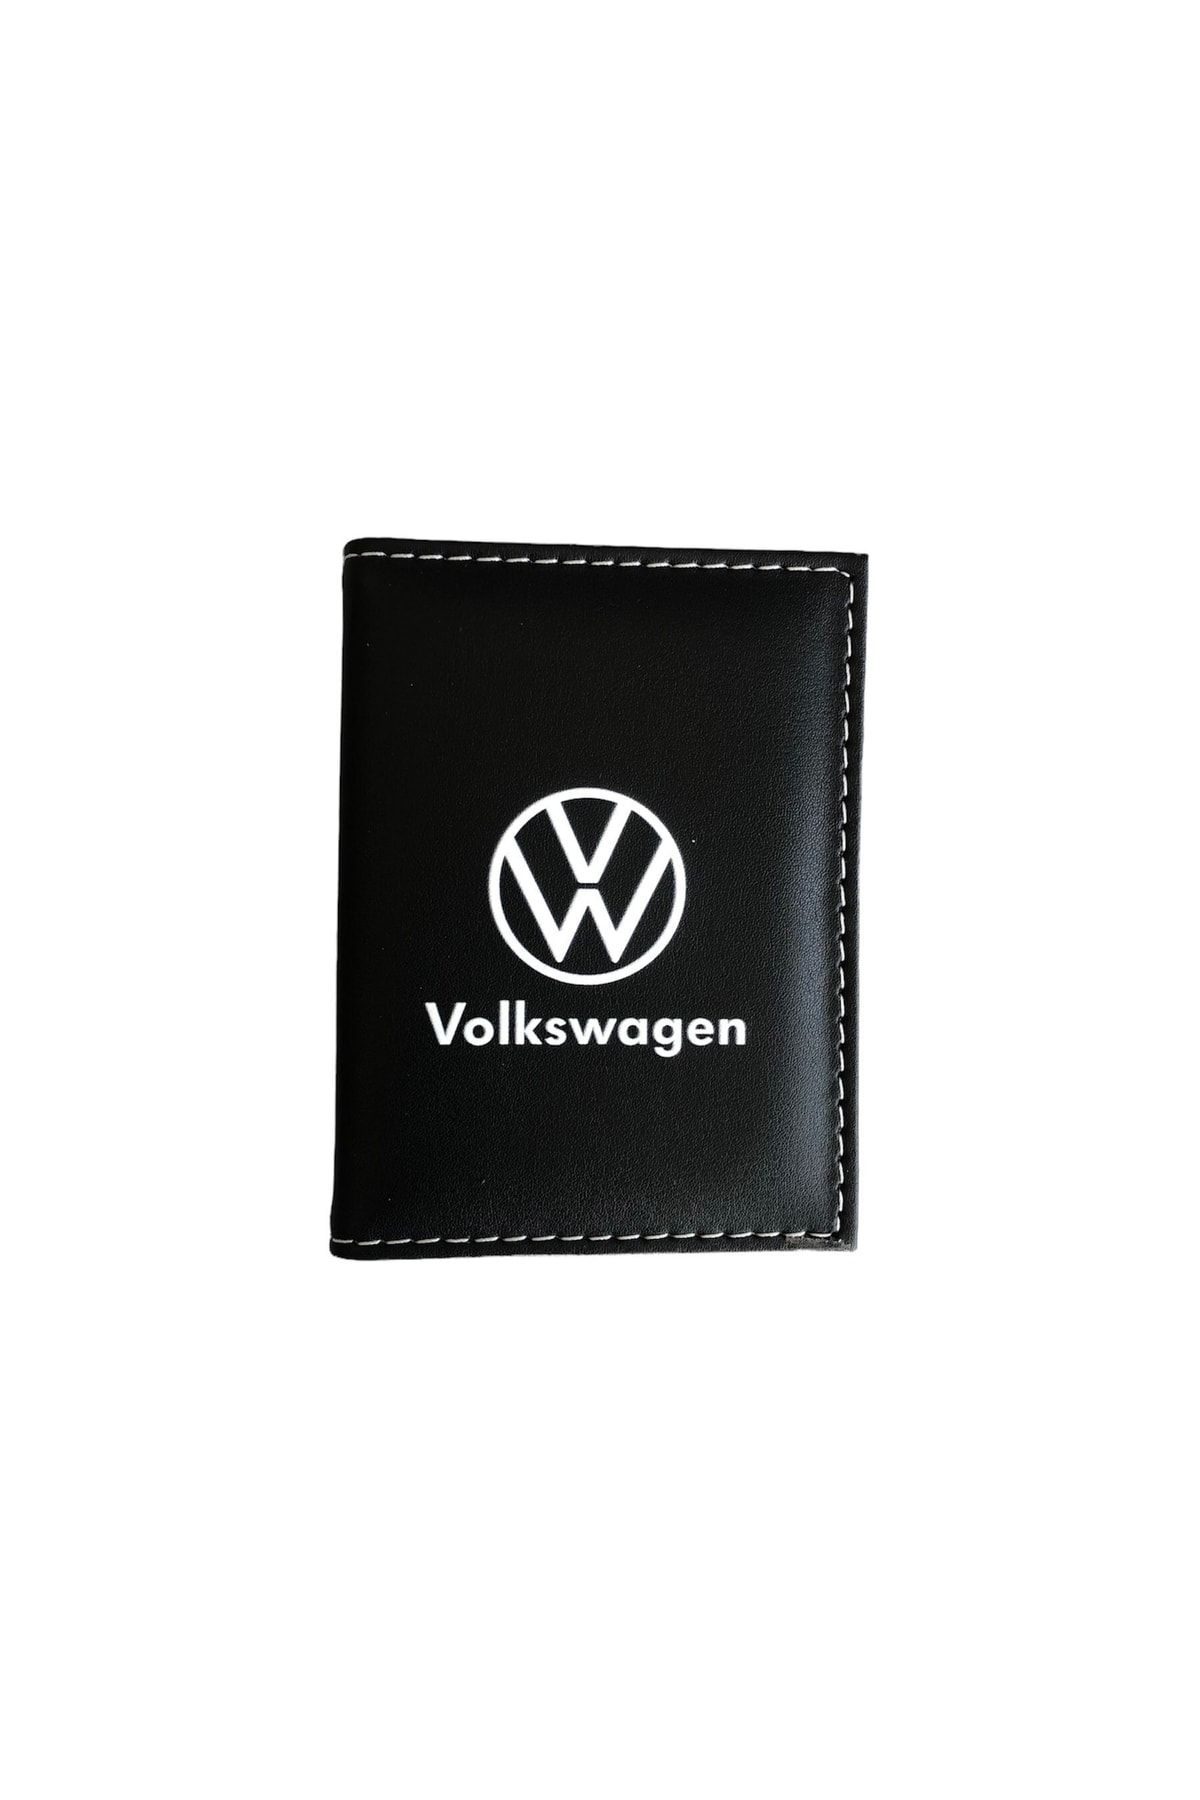 NETOTOMARKET Özel Tasarım Volkswagen Yeni Logo Ruhsat Kılıfı